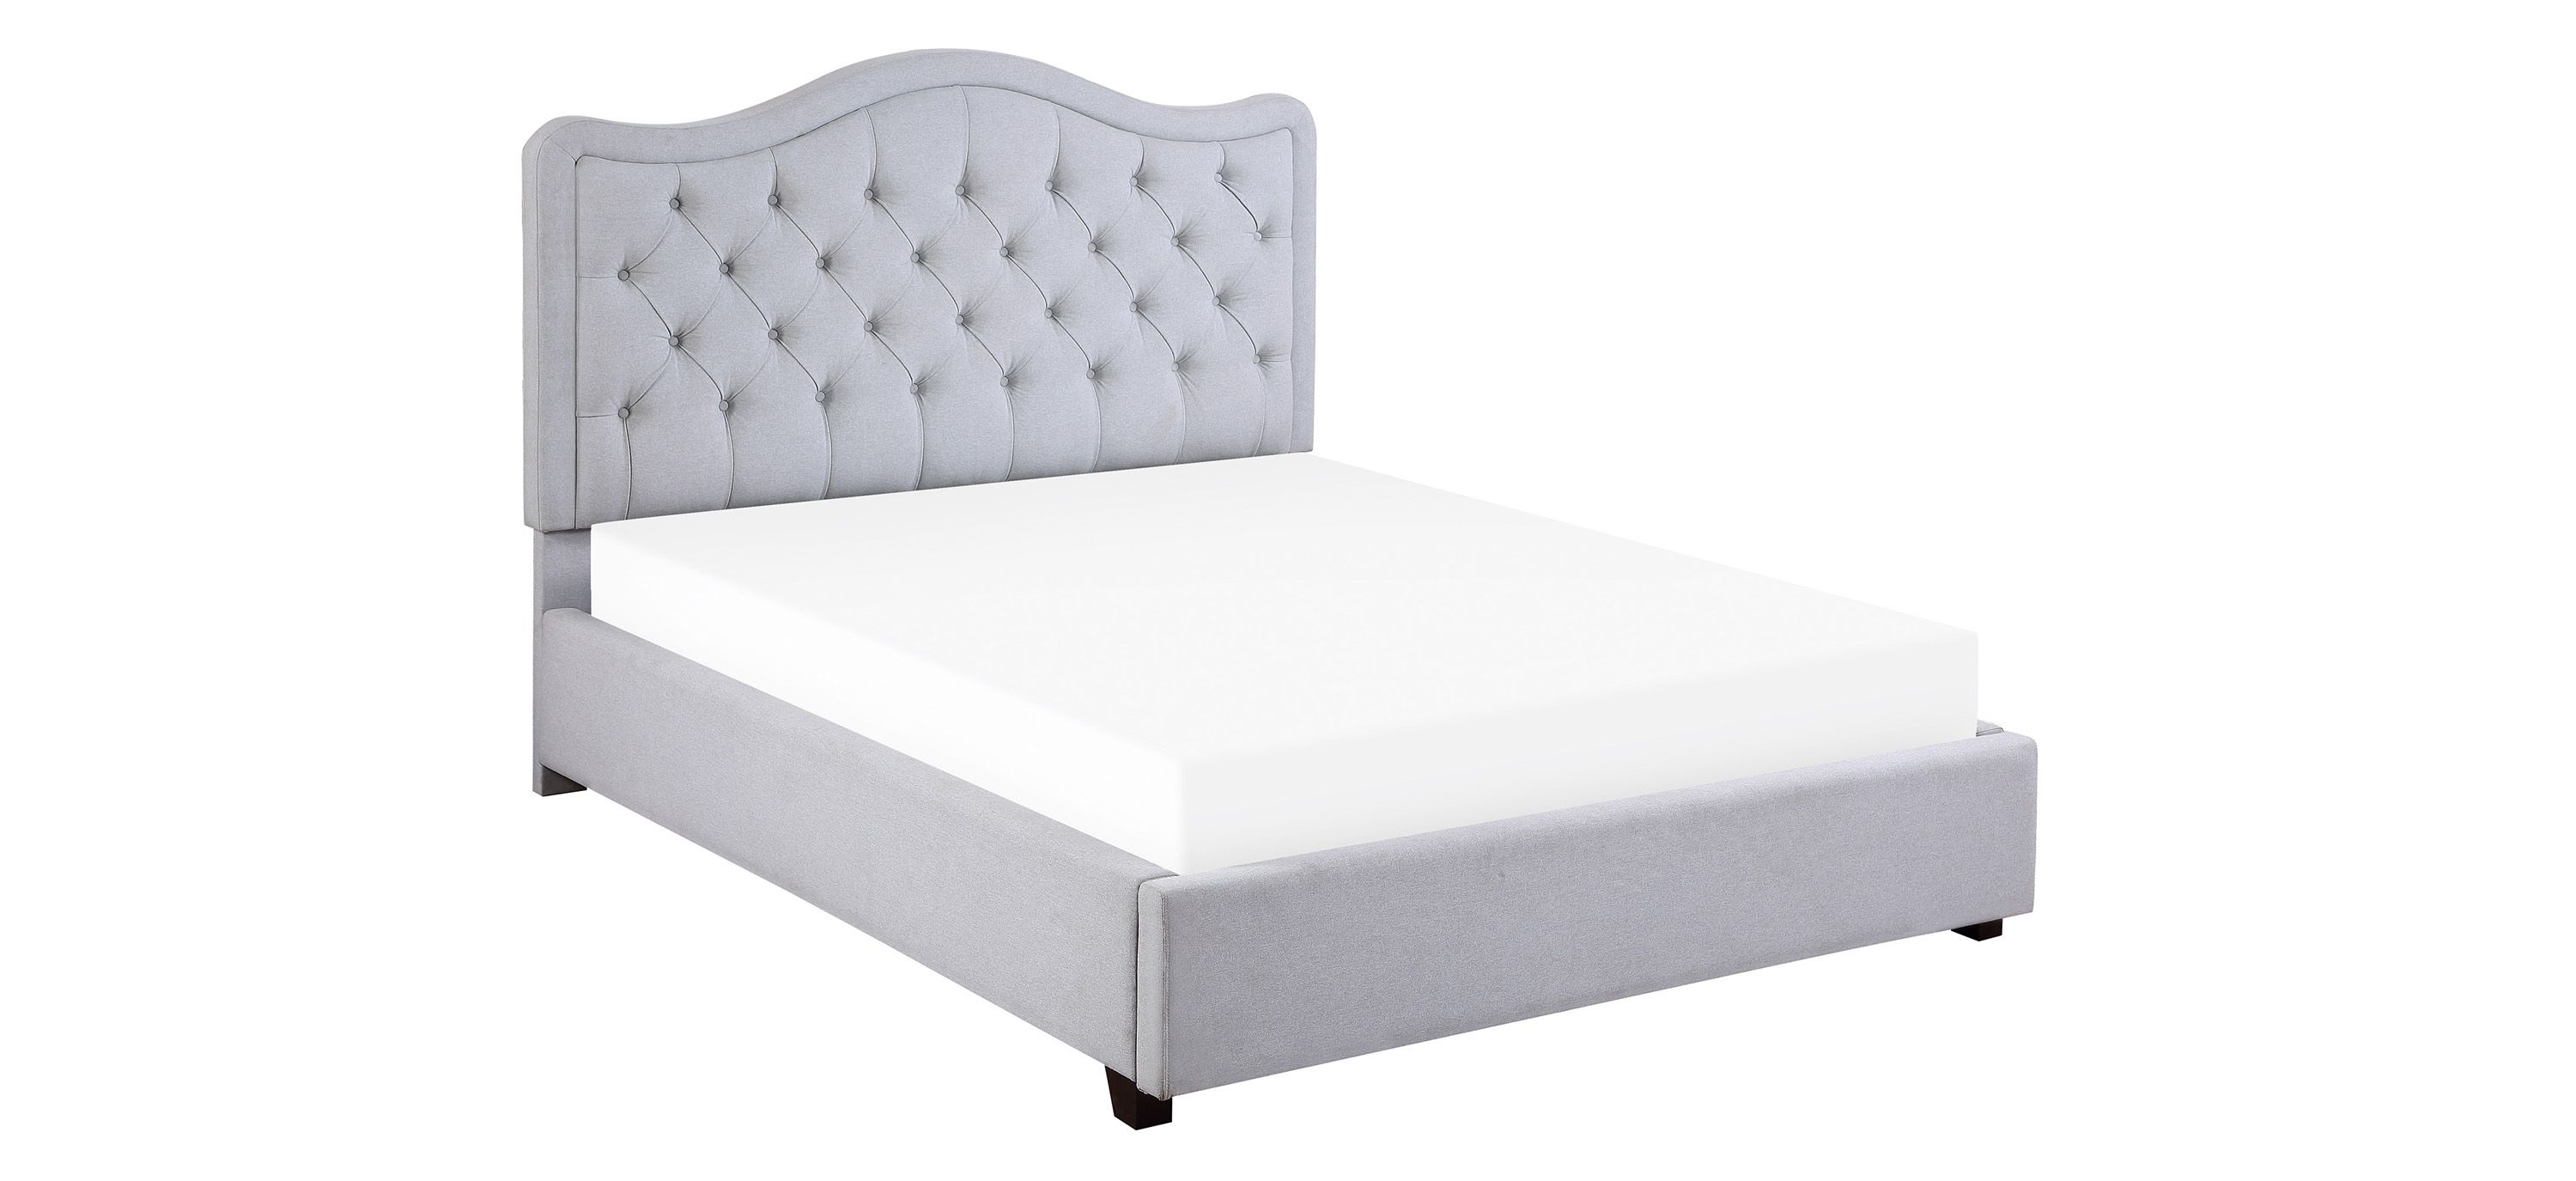 Aitana Platform Upholstered Bed